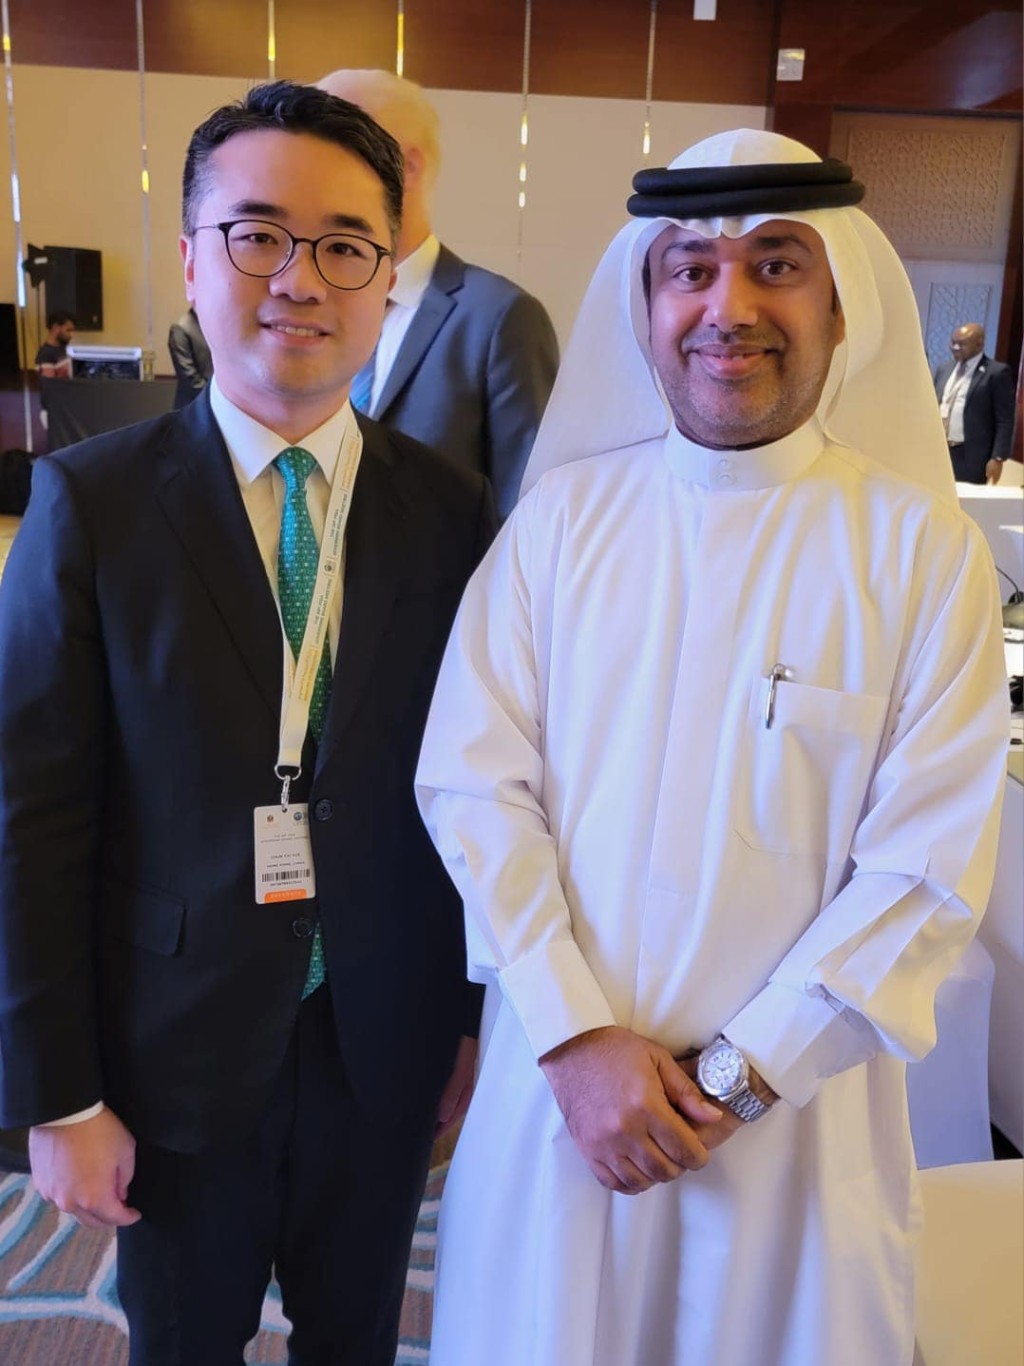 施俊輝(圖左)與阿聯酋教育部副部長Mohammad Al Mualla(圖右)交流。 施俊輝FB